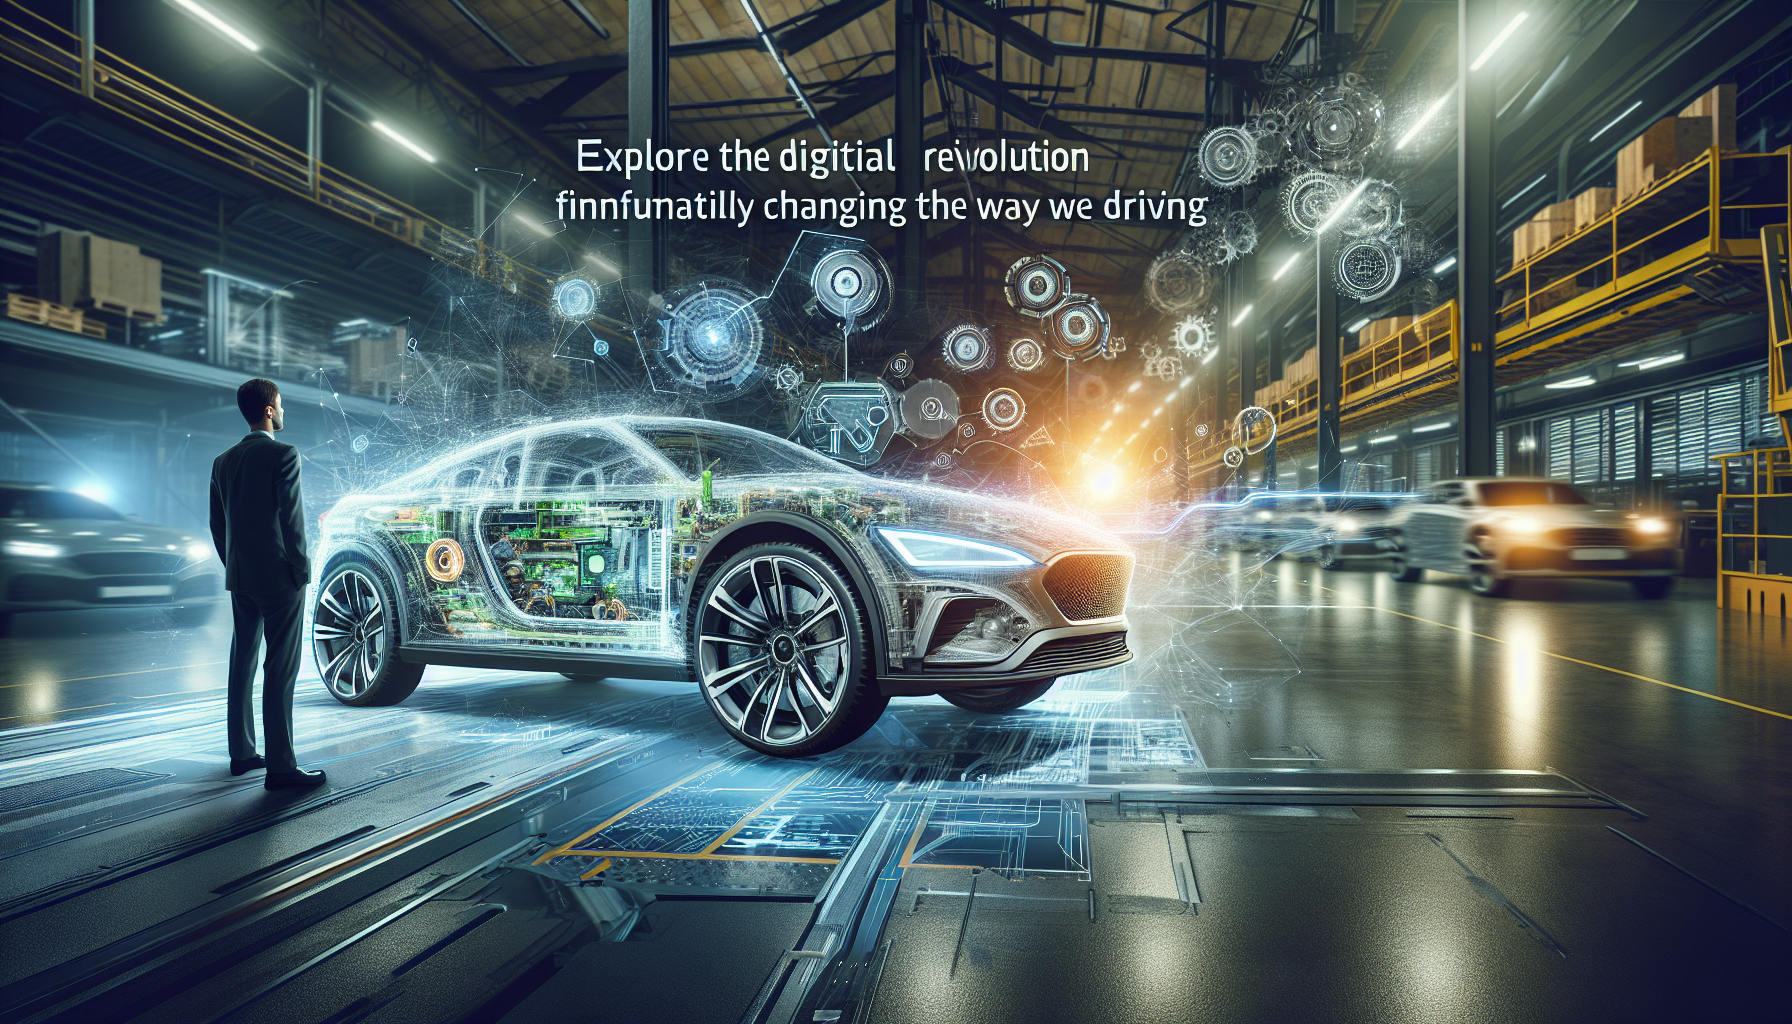 ヒュンダイとともに、デジタル技術が自動車業界にどのような変革をもたらしているかをご覧ください。運転の限界を押し広げ、自動車体験を再定義する画期的なイノベーション。